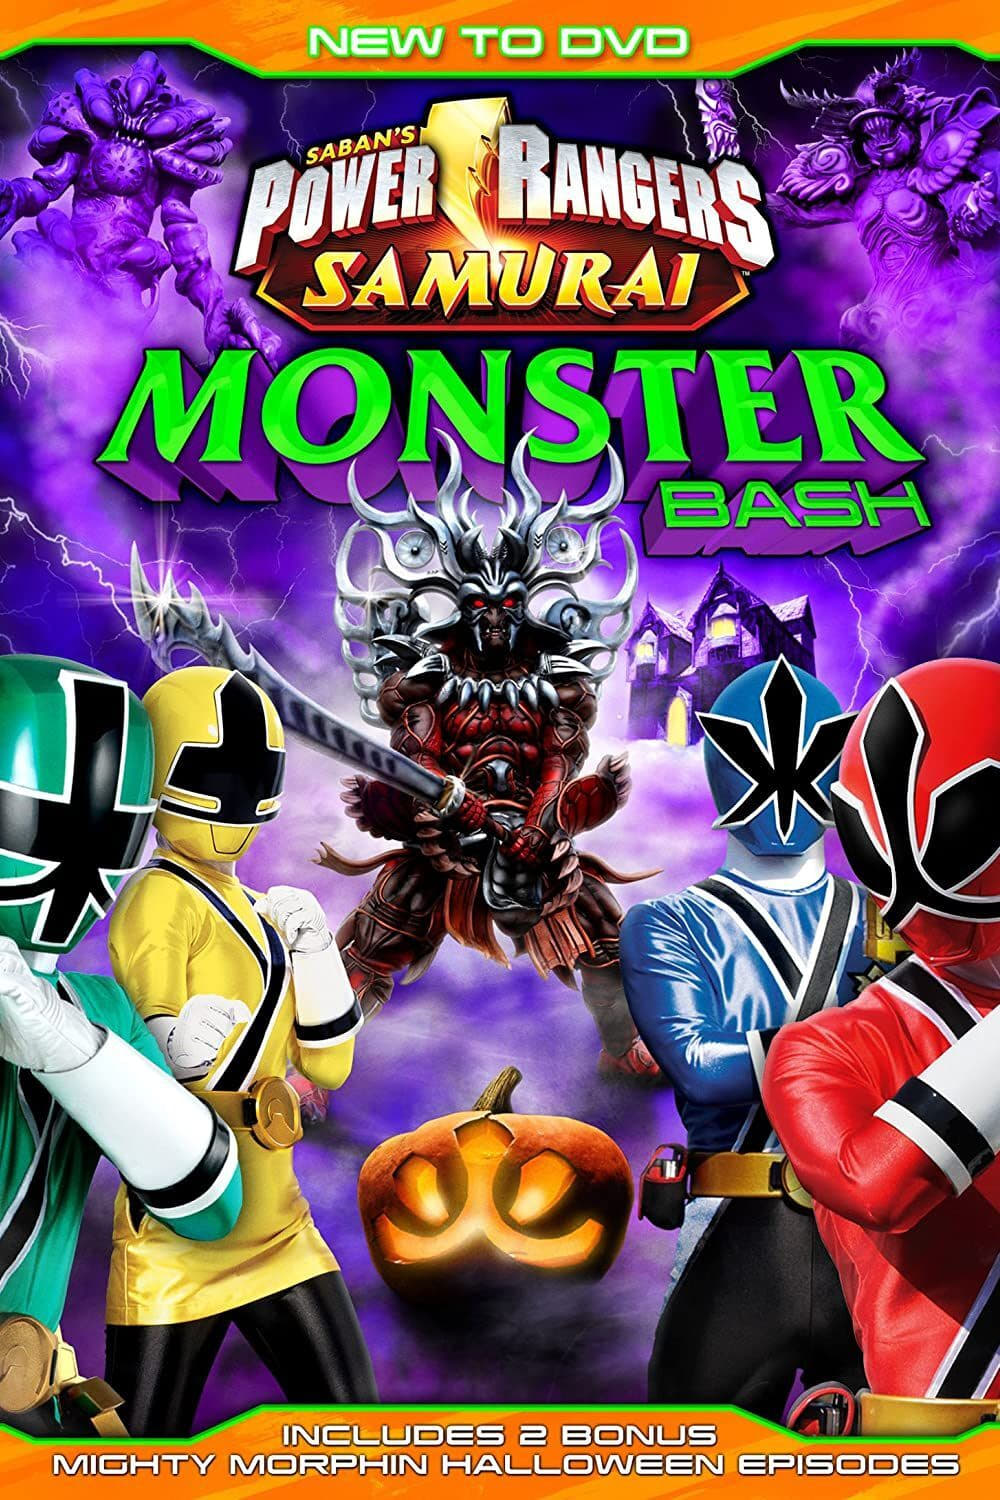 Power Rangers Samurai: Monster Bash